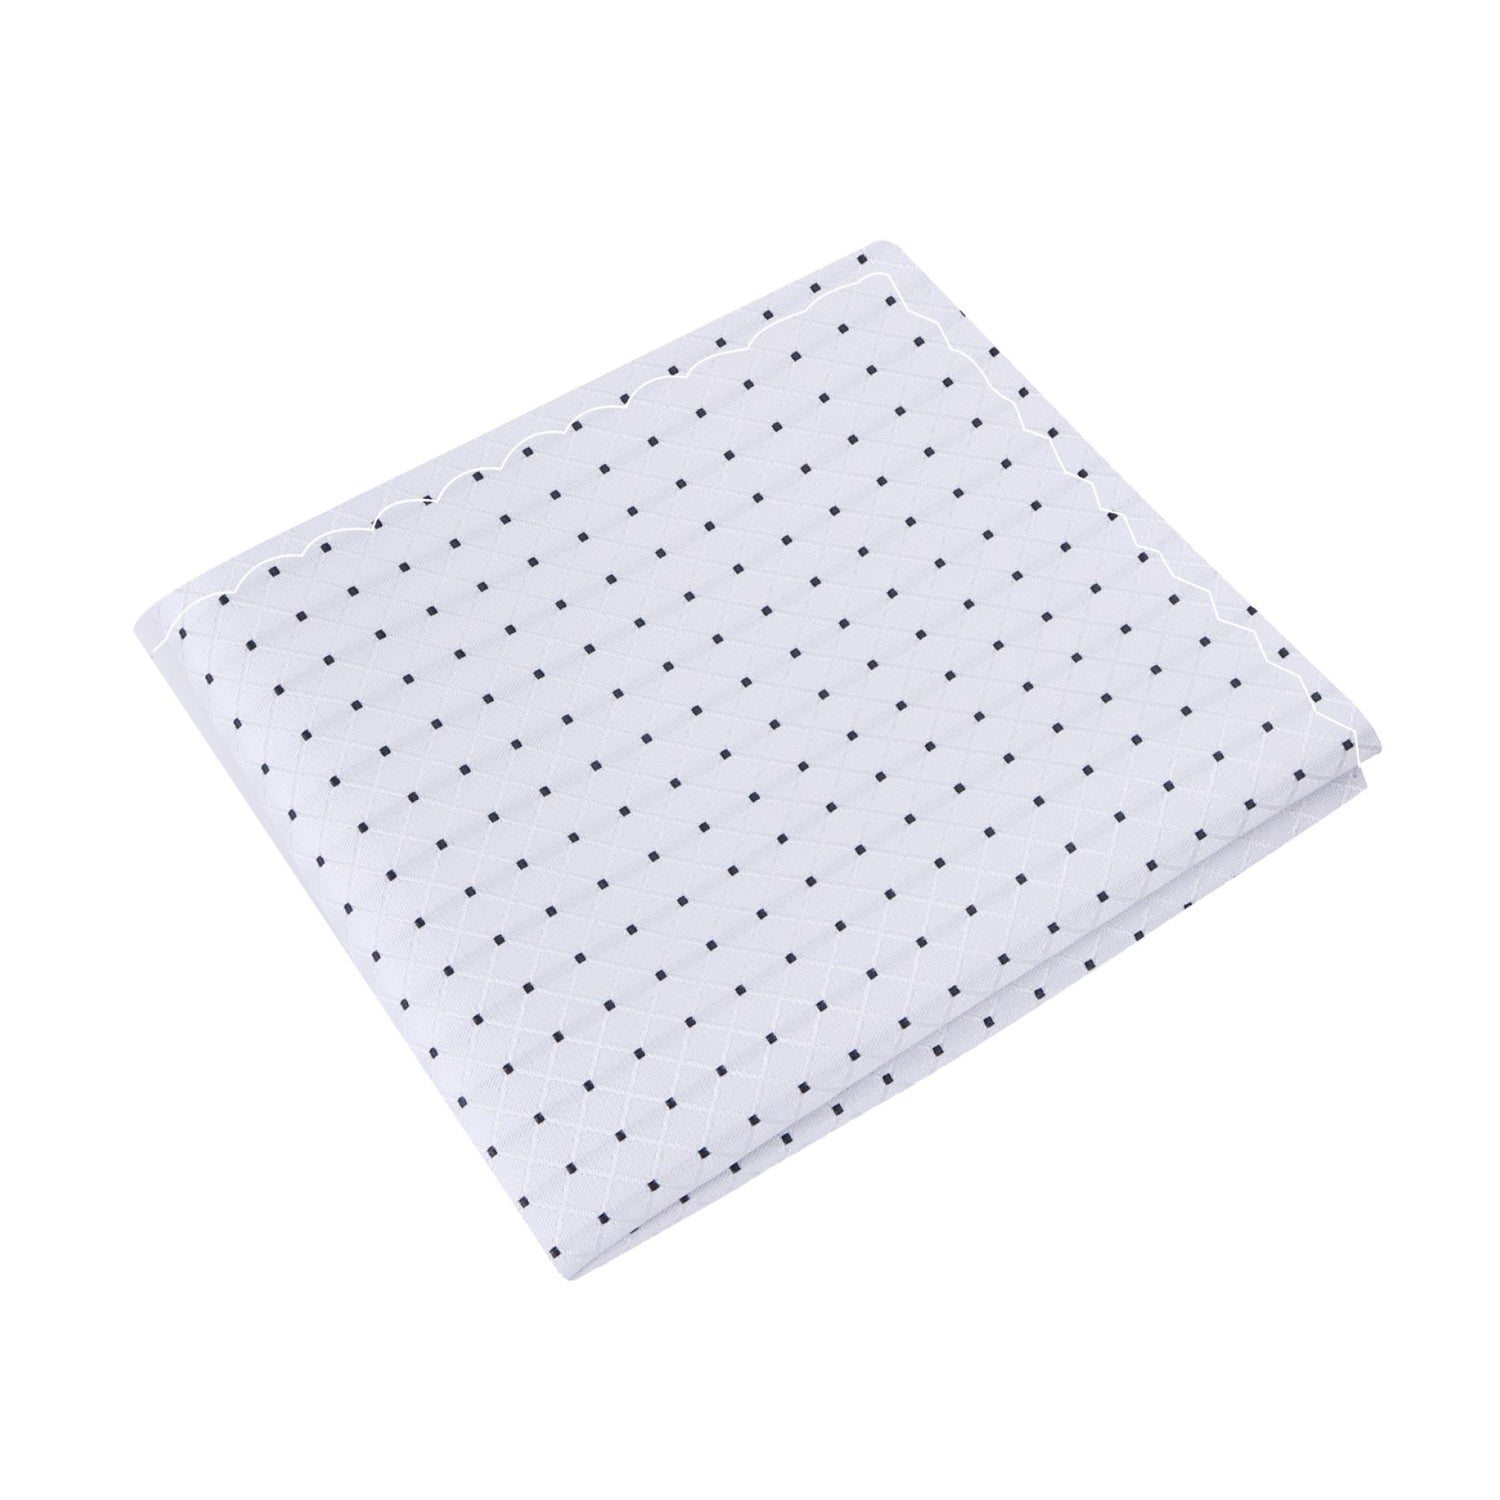 A White, Black Polka Dot Pattern Silk Pocket Square